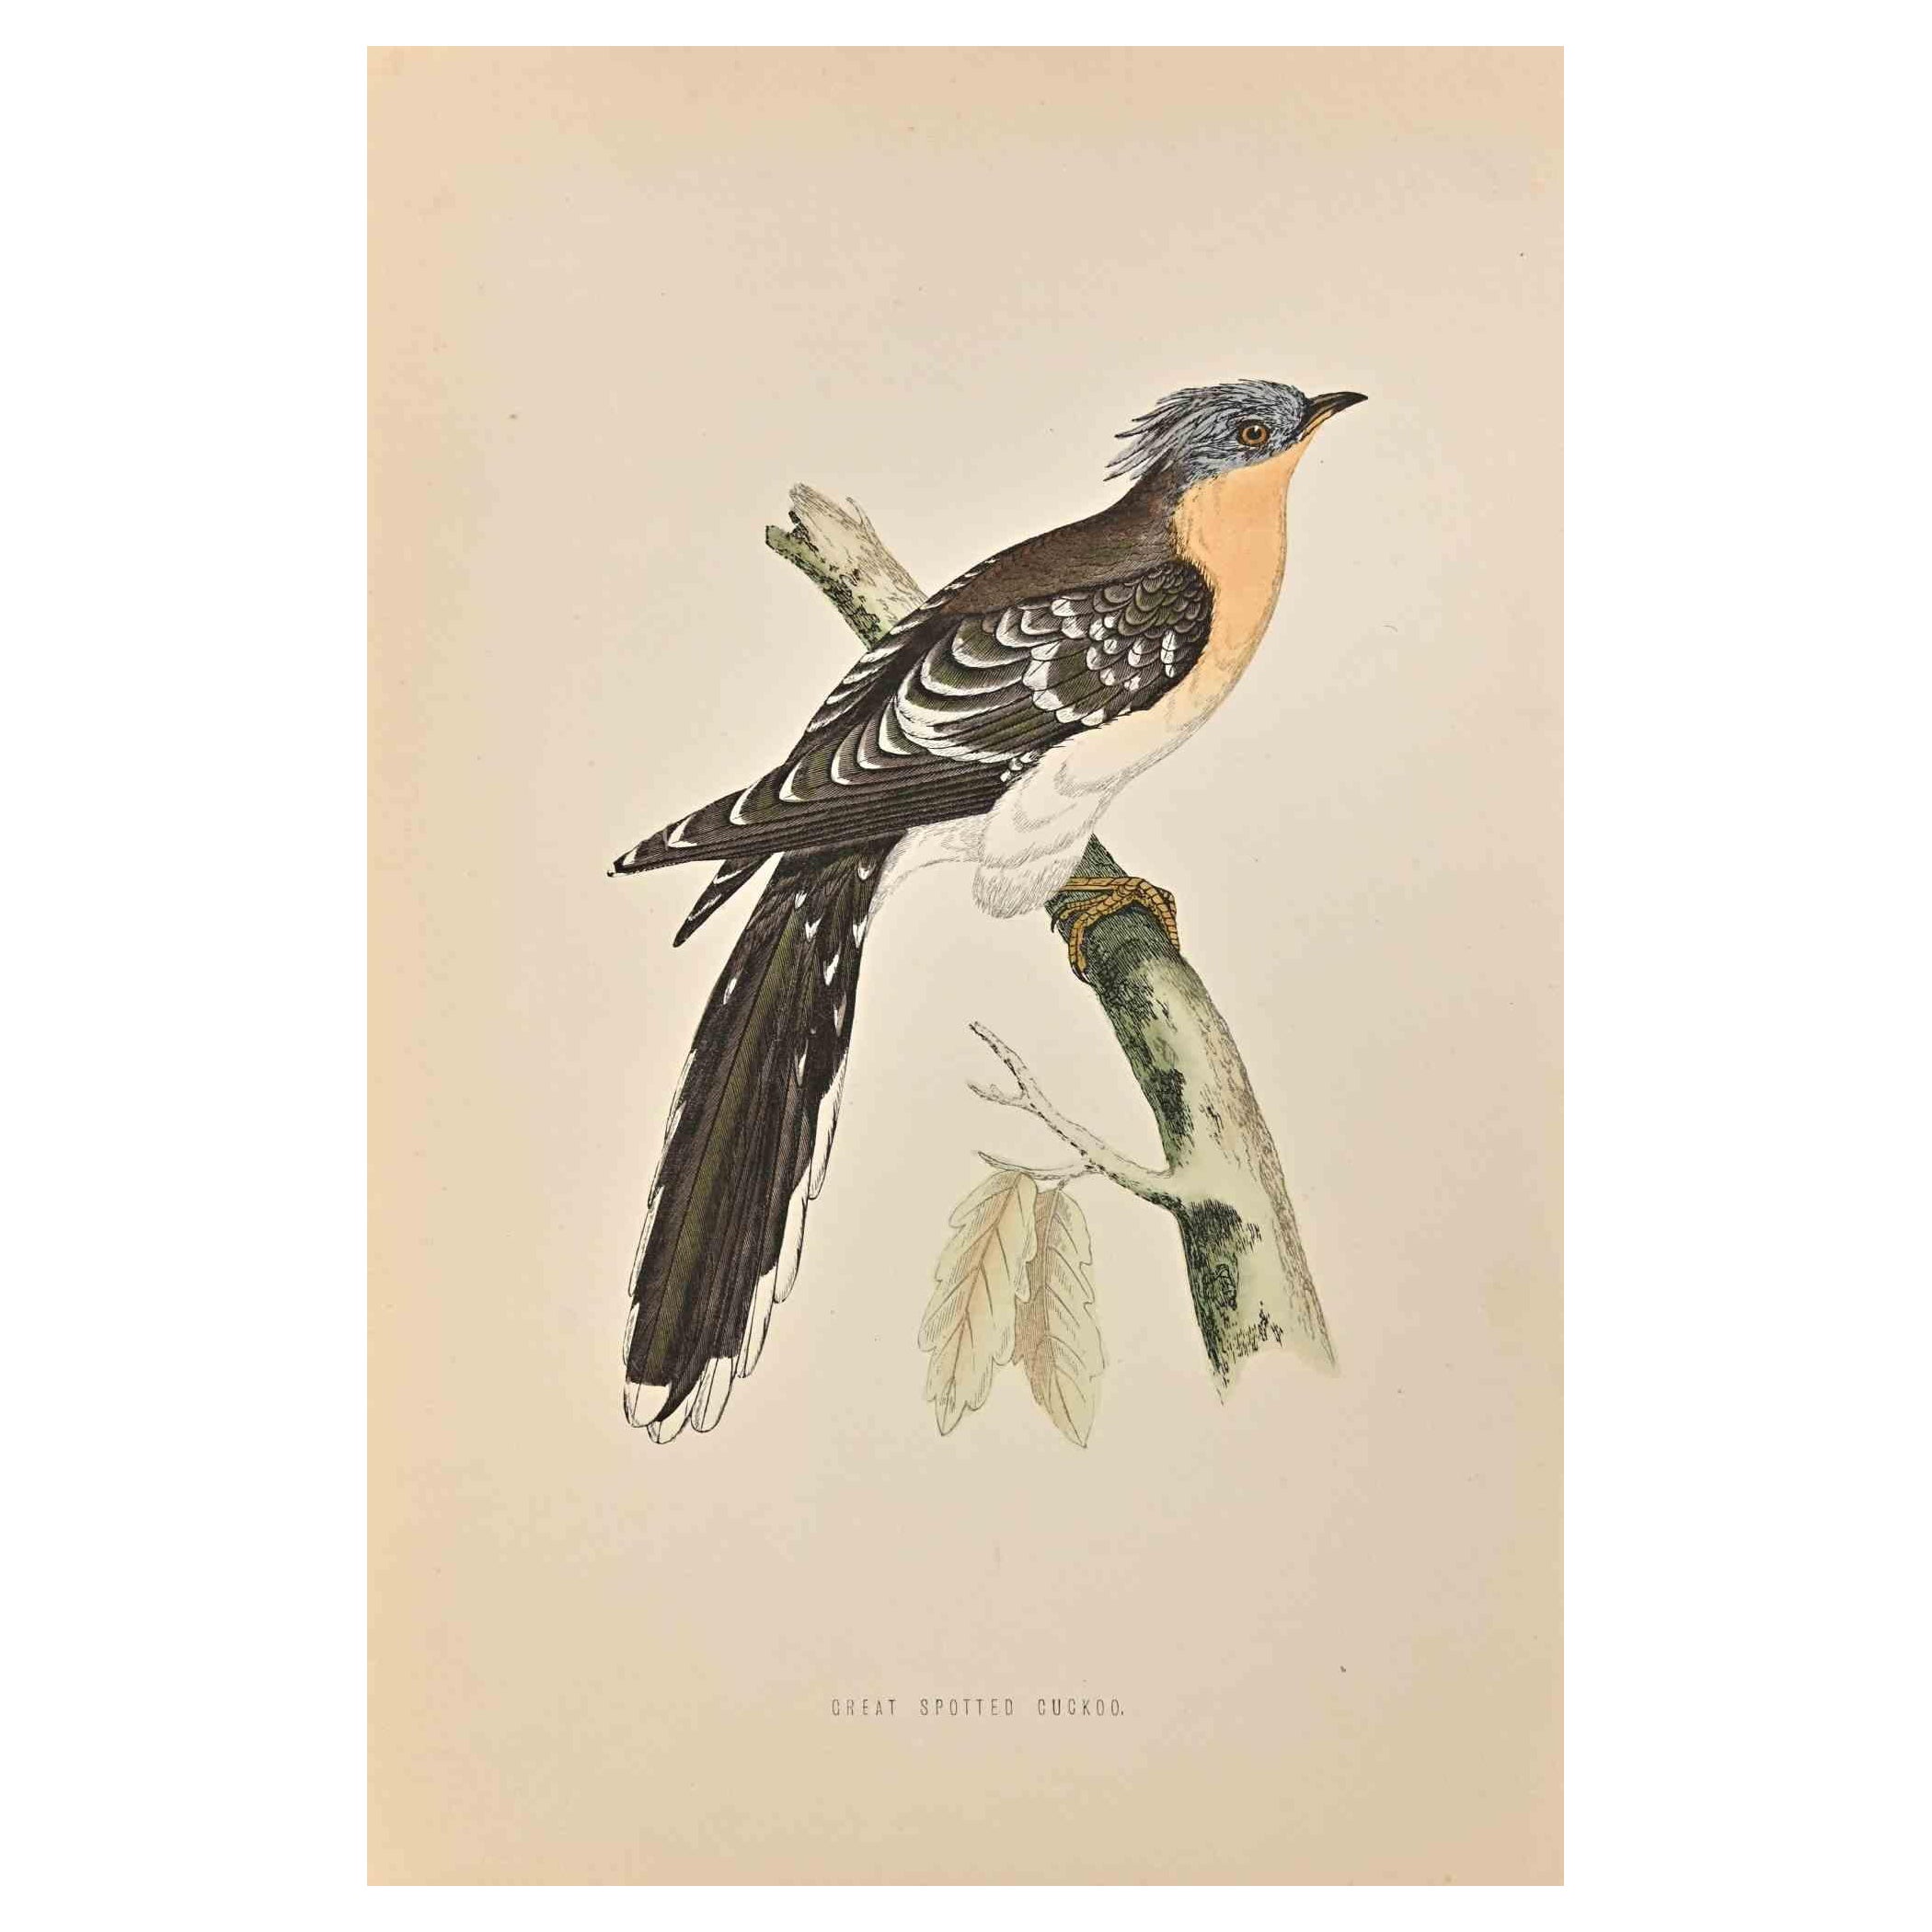 Le coucou tacheté est une œuvre d'art moderne réalisée en 1870 par l'artiste britannique Alexander Francis Lydon (1836-1917) . 

Gravure sur bois, colorée à la main, publiée par London, Bell & Sons, 1870.  Nom de l'oiseau imprimé dans la plaque.